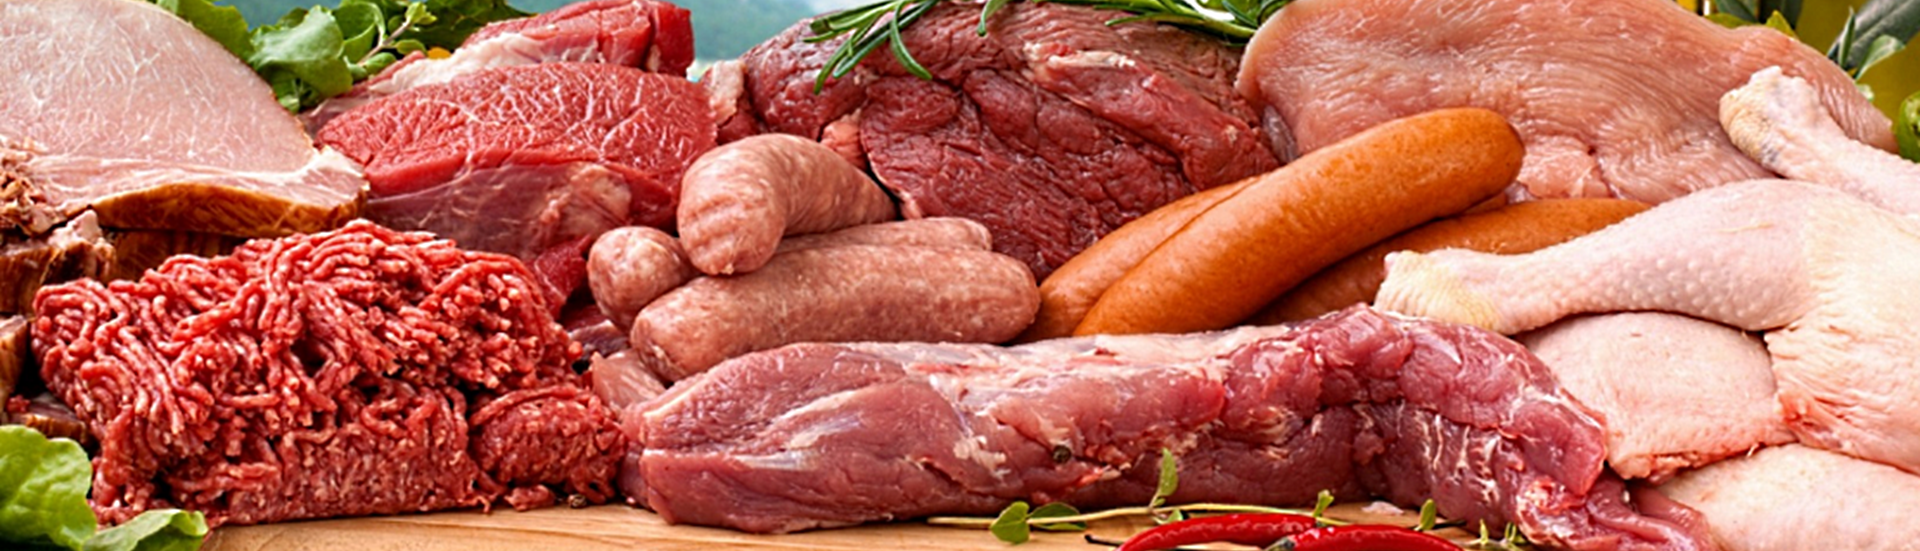 Topbillede med kødvarer